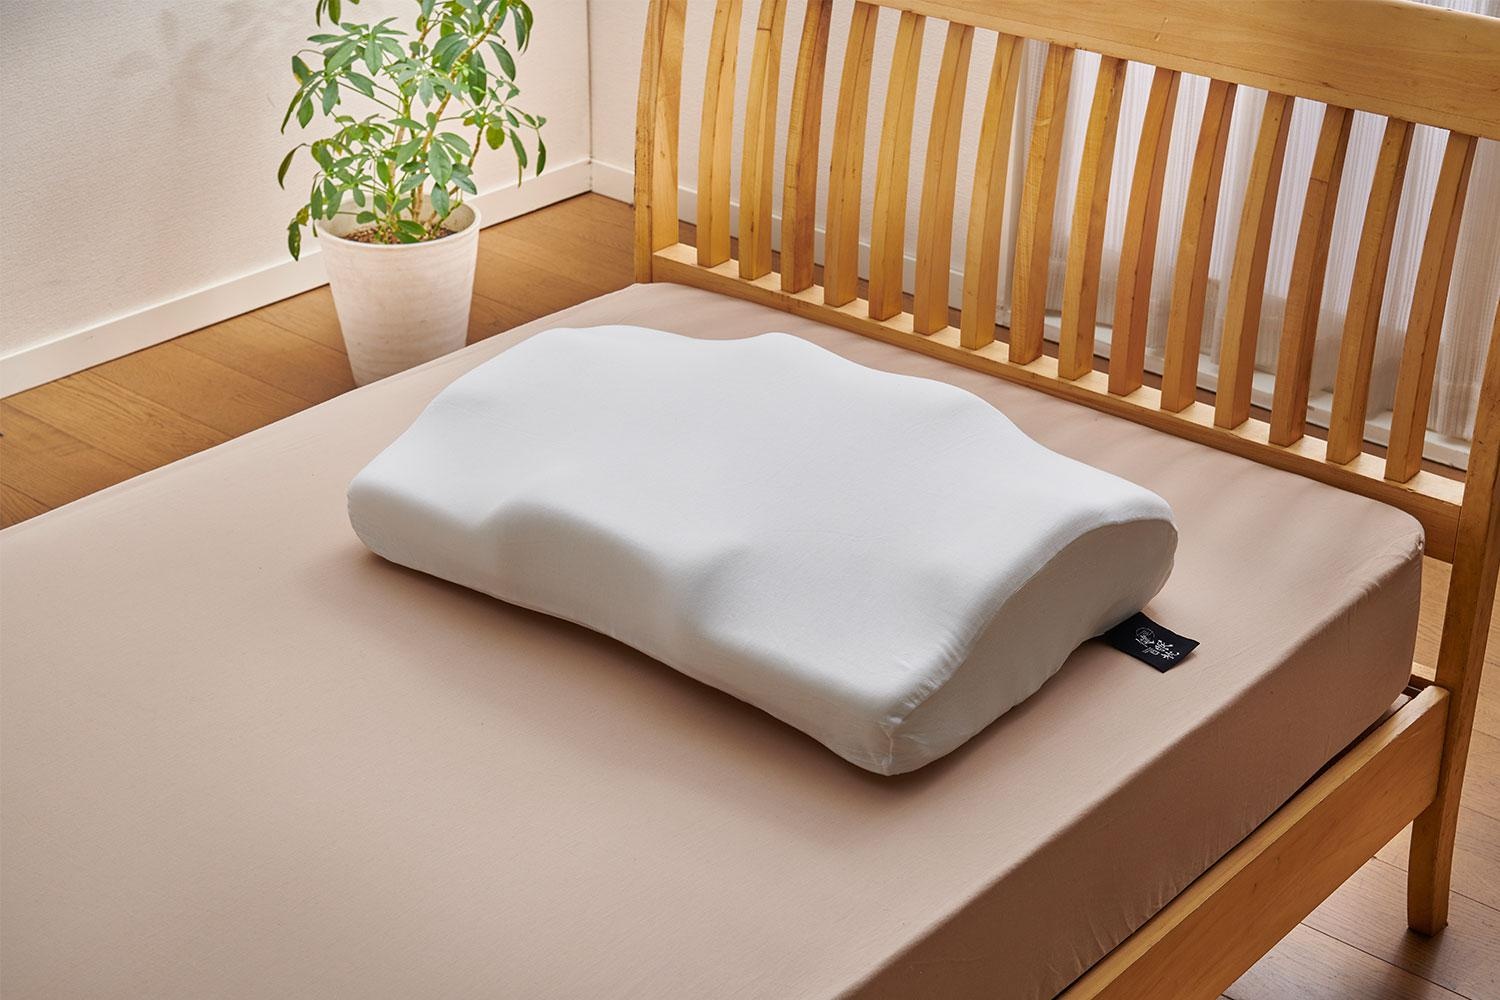 『健眠枕』はどんな姿勢で寝ても体への負担が軽くなる形状になっている